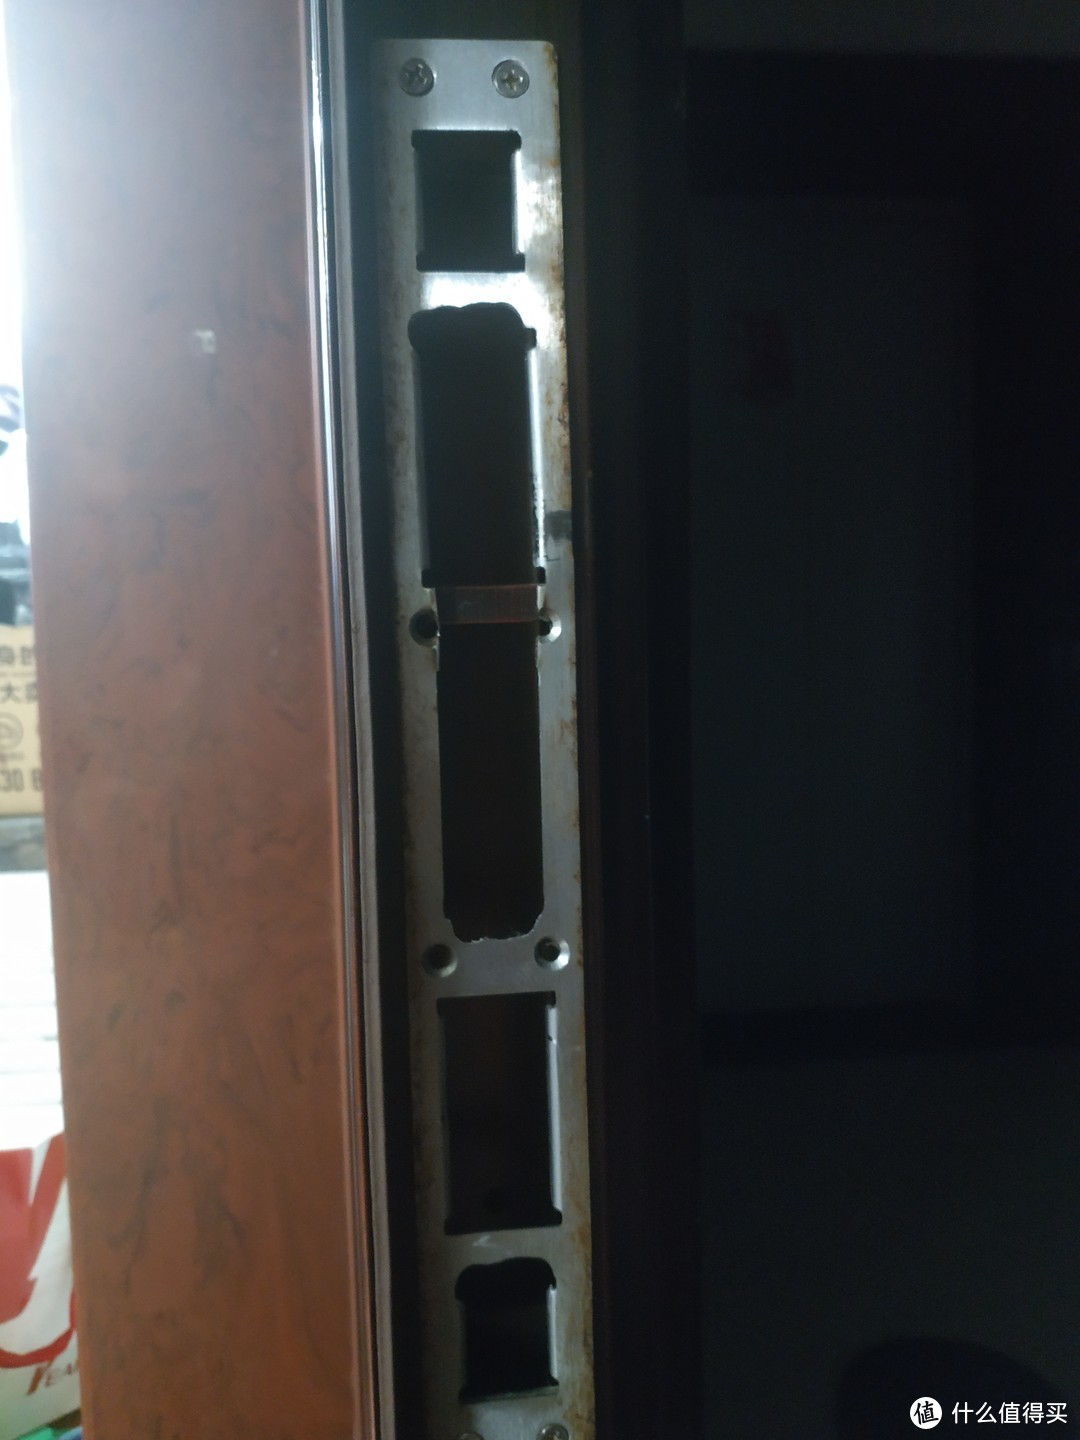 安装的师傅试了试这把锁自带的框后，跟我家的门不是很配套，还是决定在这原始的门上改动下，电磨其实磨得不是很平整。